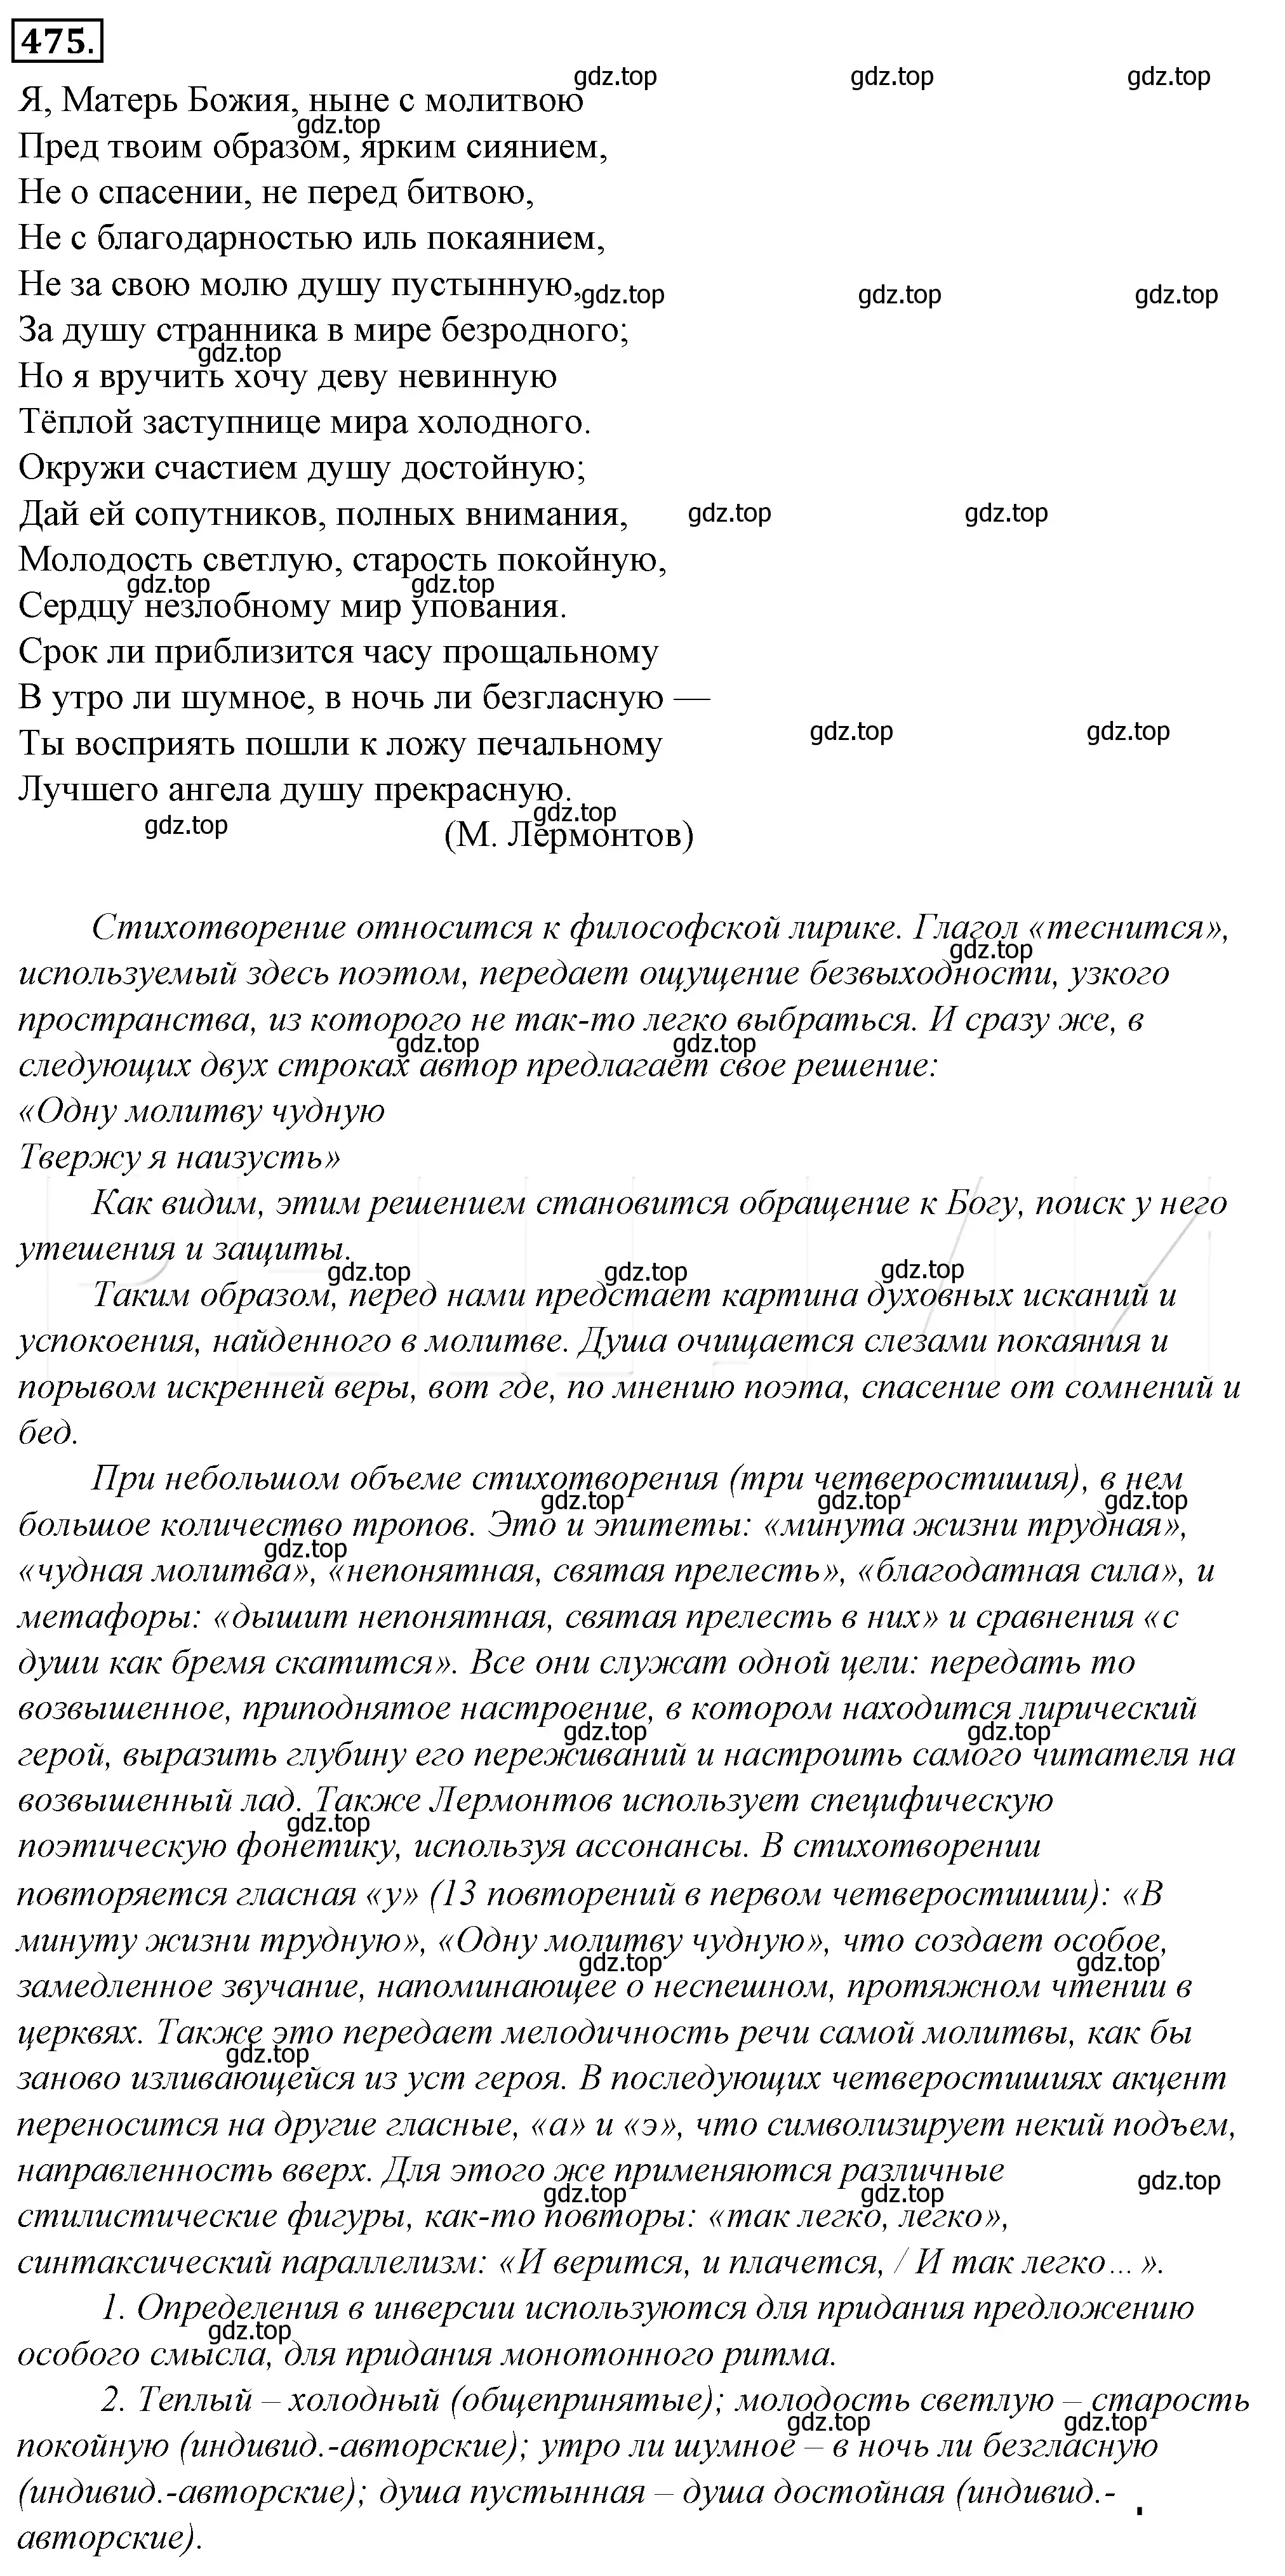 Решение 4. номер 140 (страница 194) гдз по русскому языку 10-11 класс Гольцова, Шамшин, учебник 2 часть